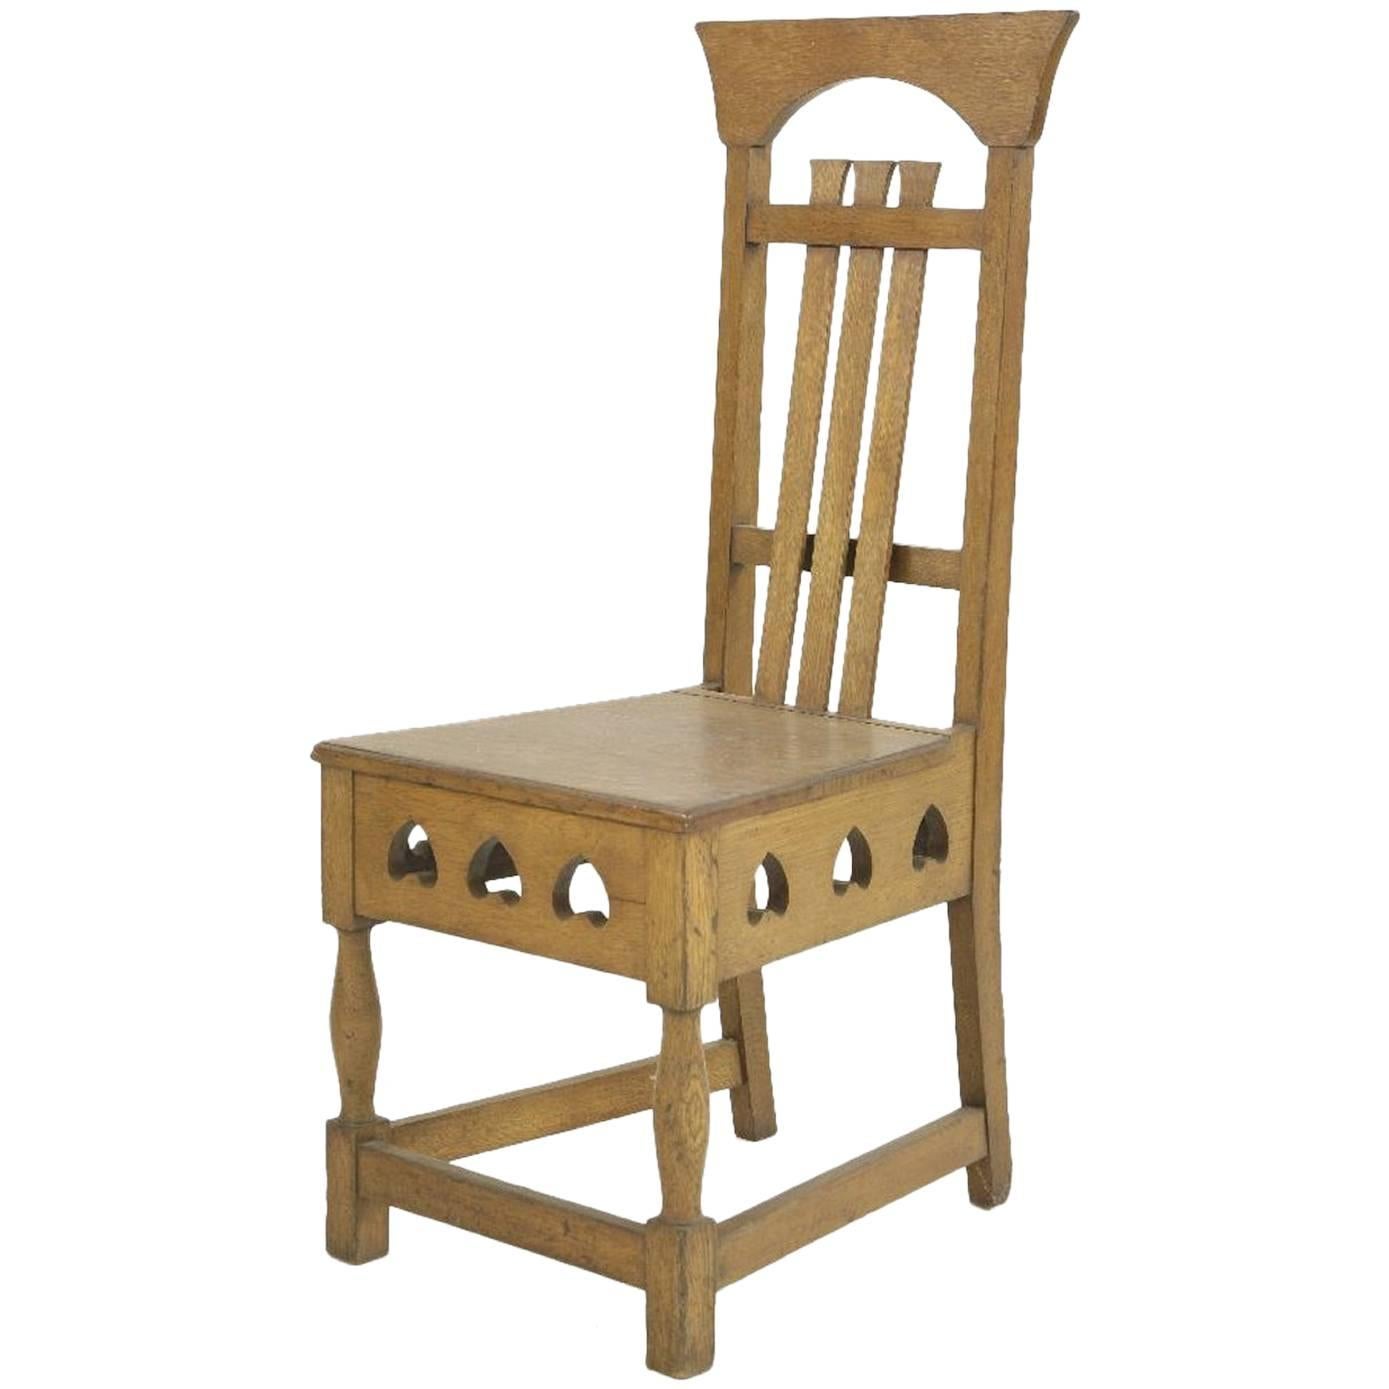 Shapland und Petter Arts & Crafts-Stuhl aus Eichenholz im Stil von M H Baillie Scott